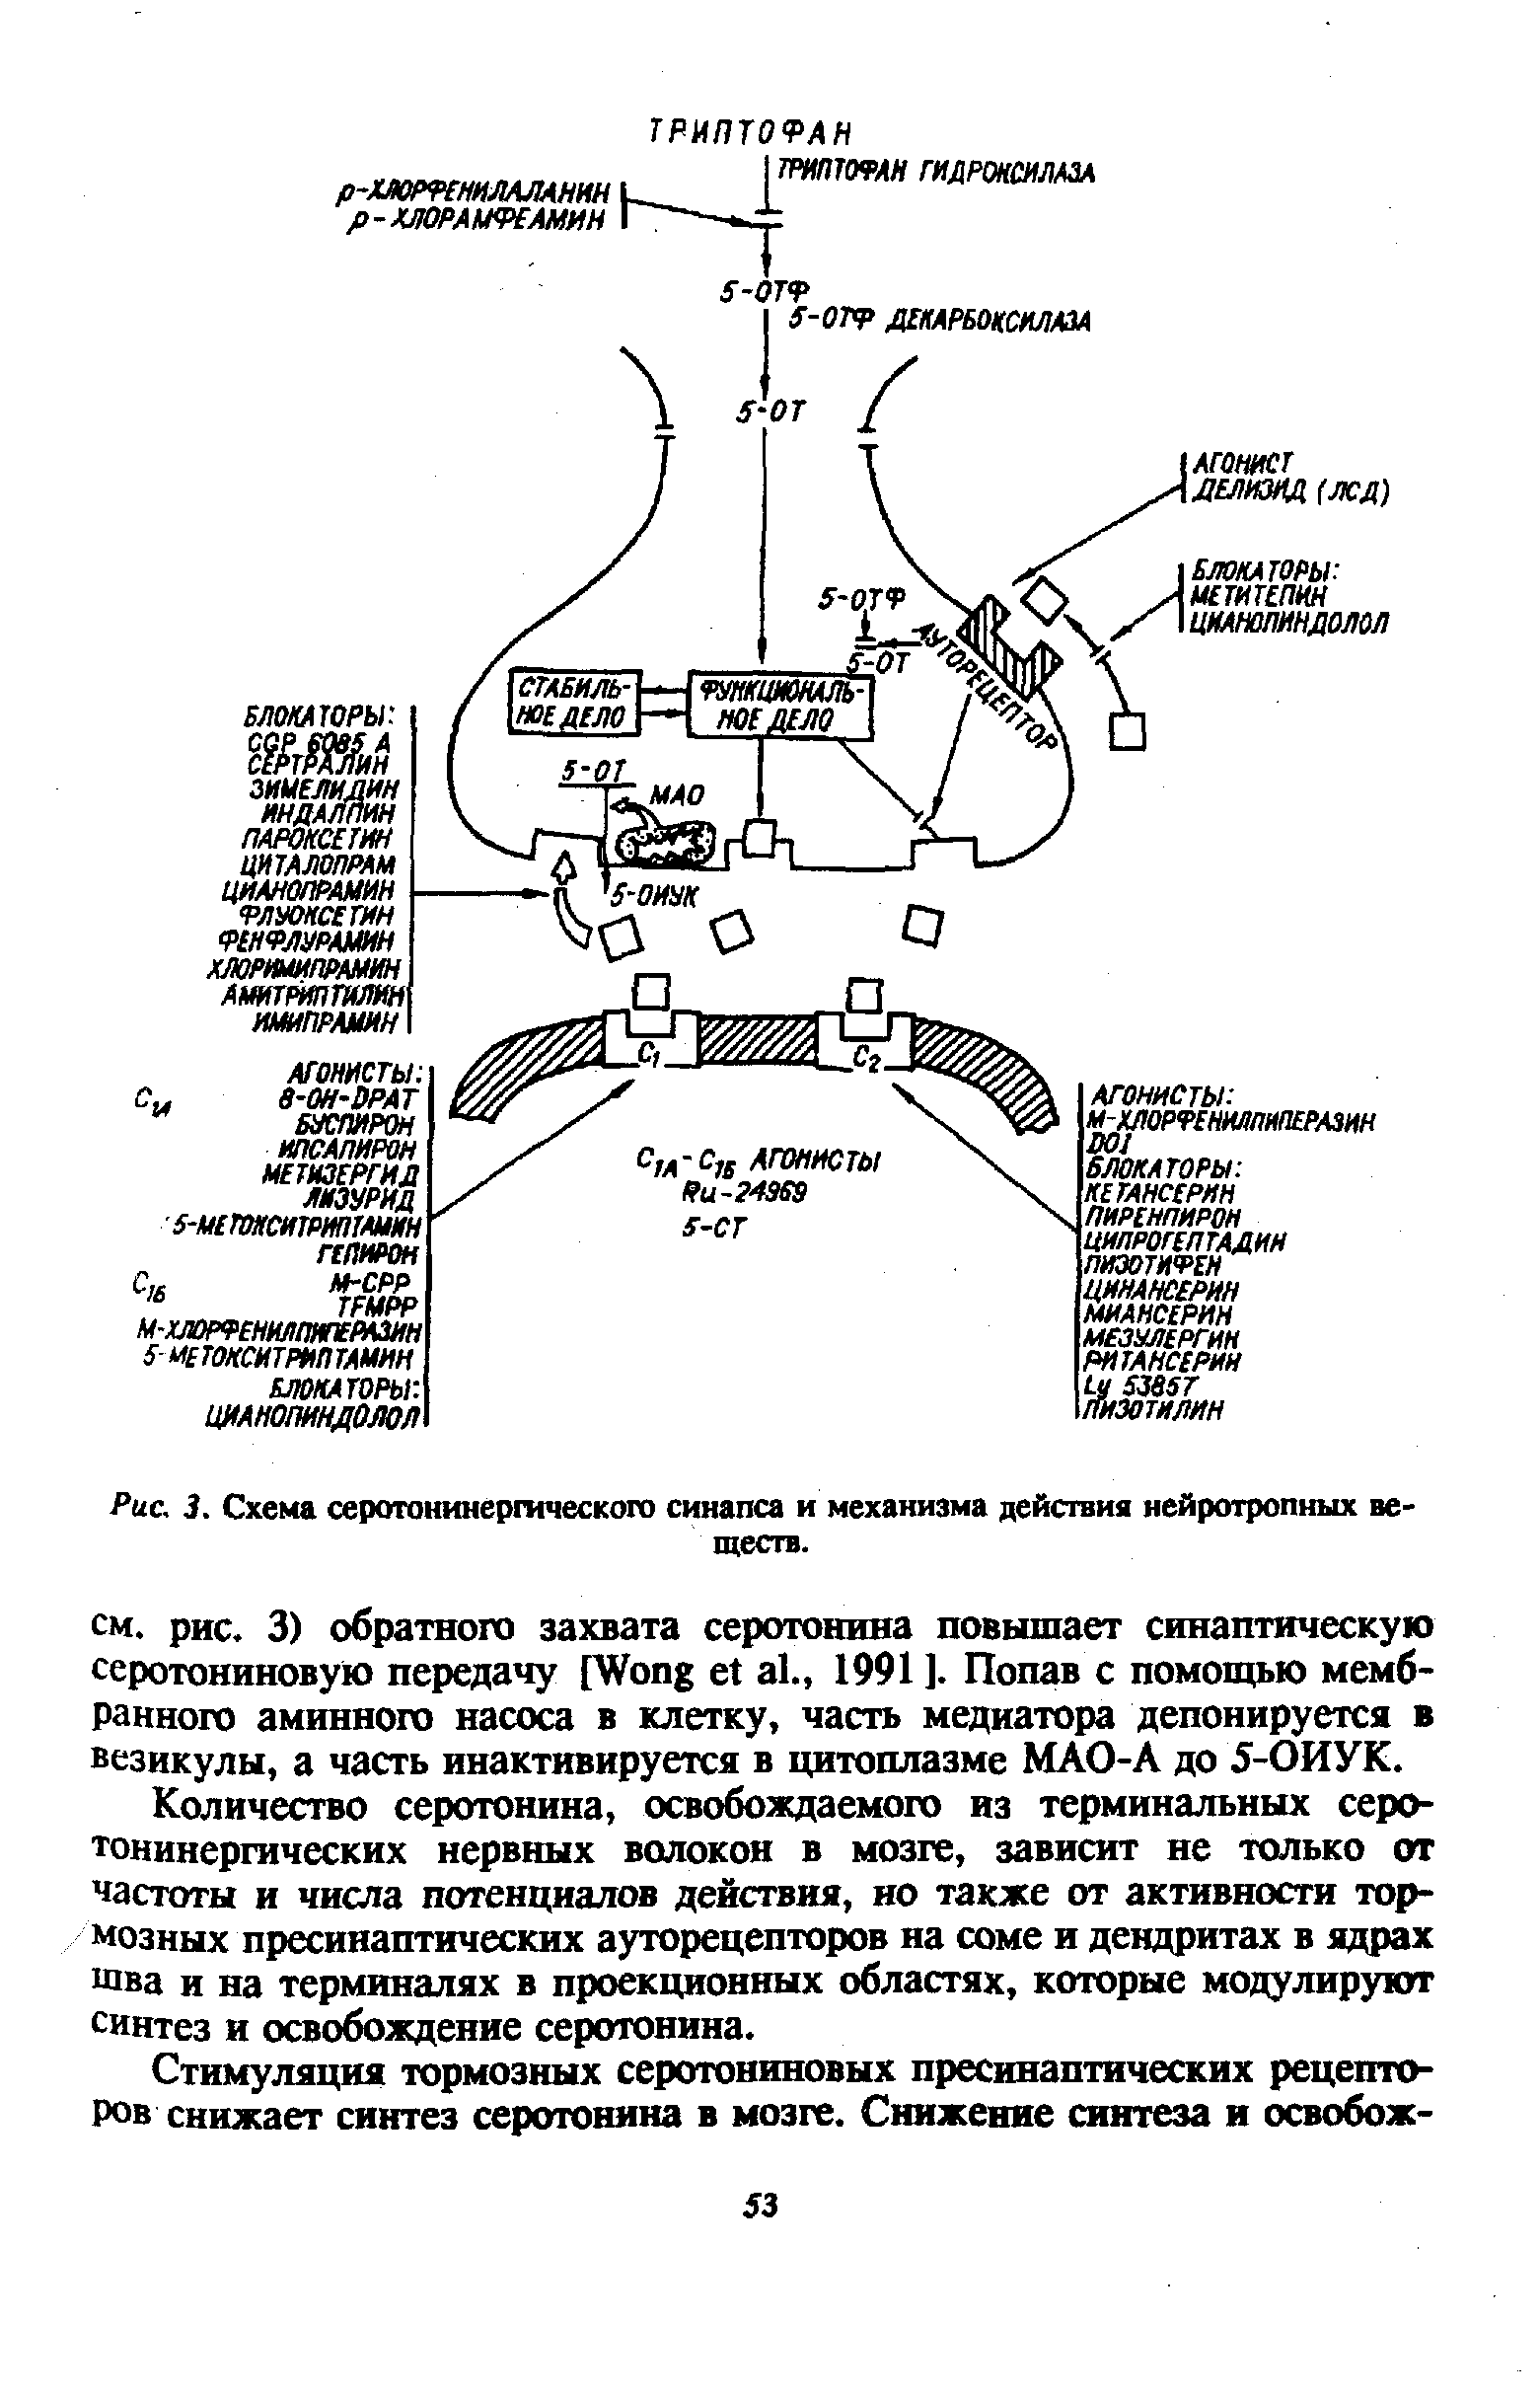 Рис. 3. Схема серотонинергического синапса и механизма действия нейротропных веществ.